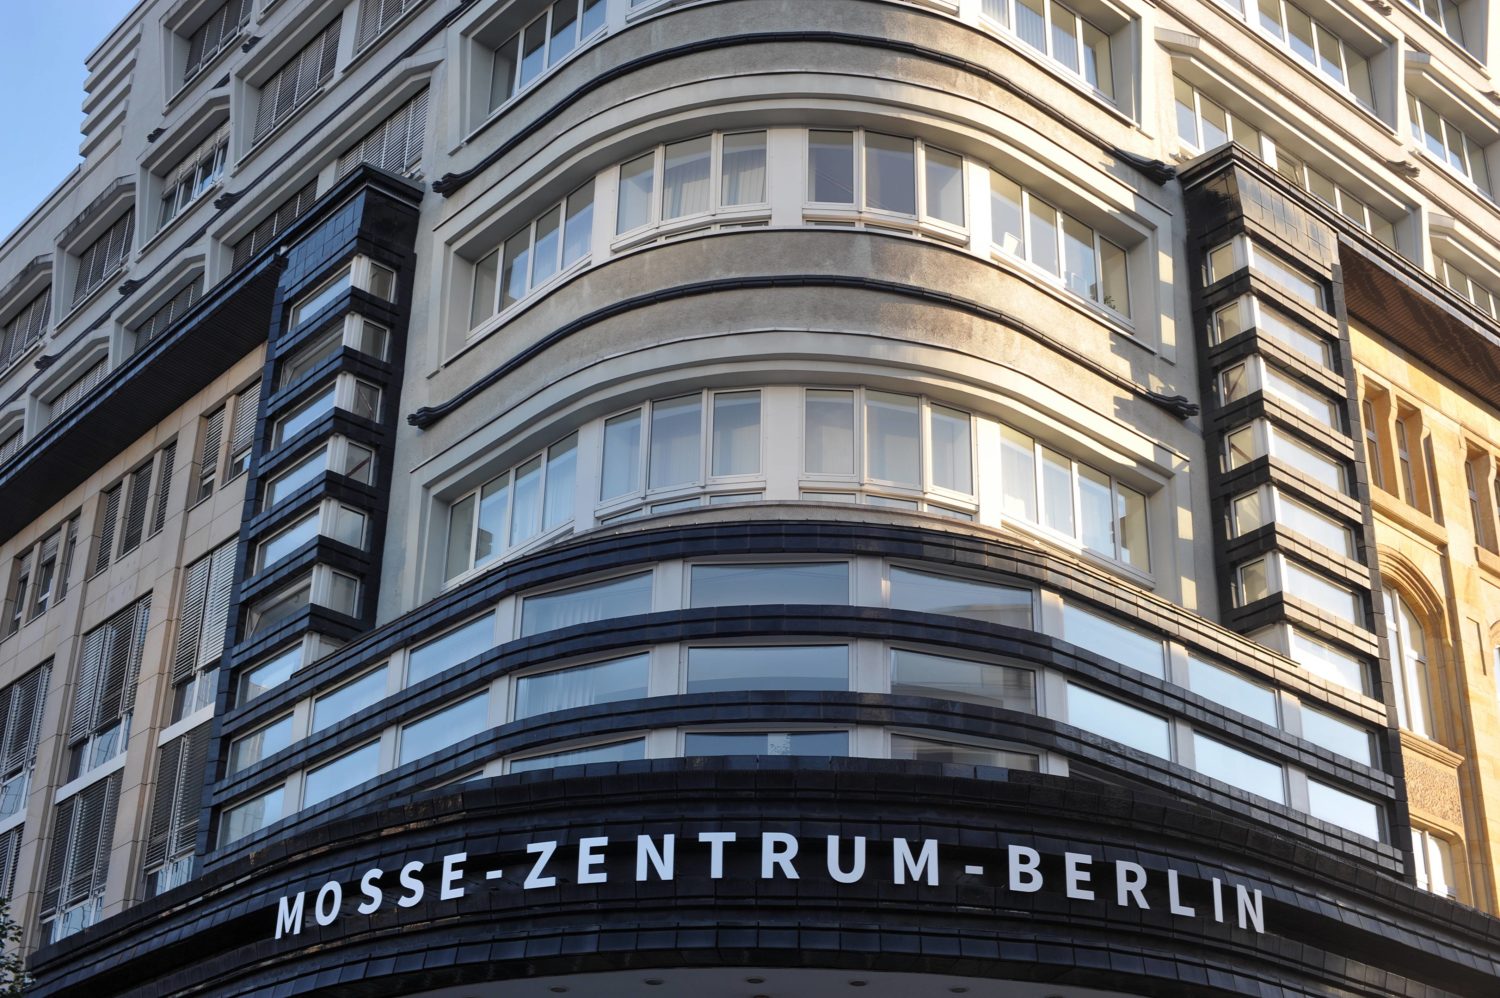 Ungewöhnliche Gebäude in Berlin: Gebäude des Mosse-Zentrum-Berlin in der Schützenstraße 25, Mitte. Foto: Imago/Klaus Martin Höfer